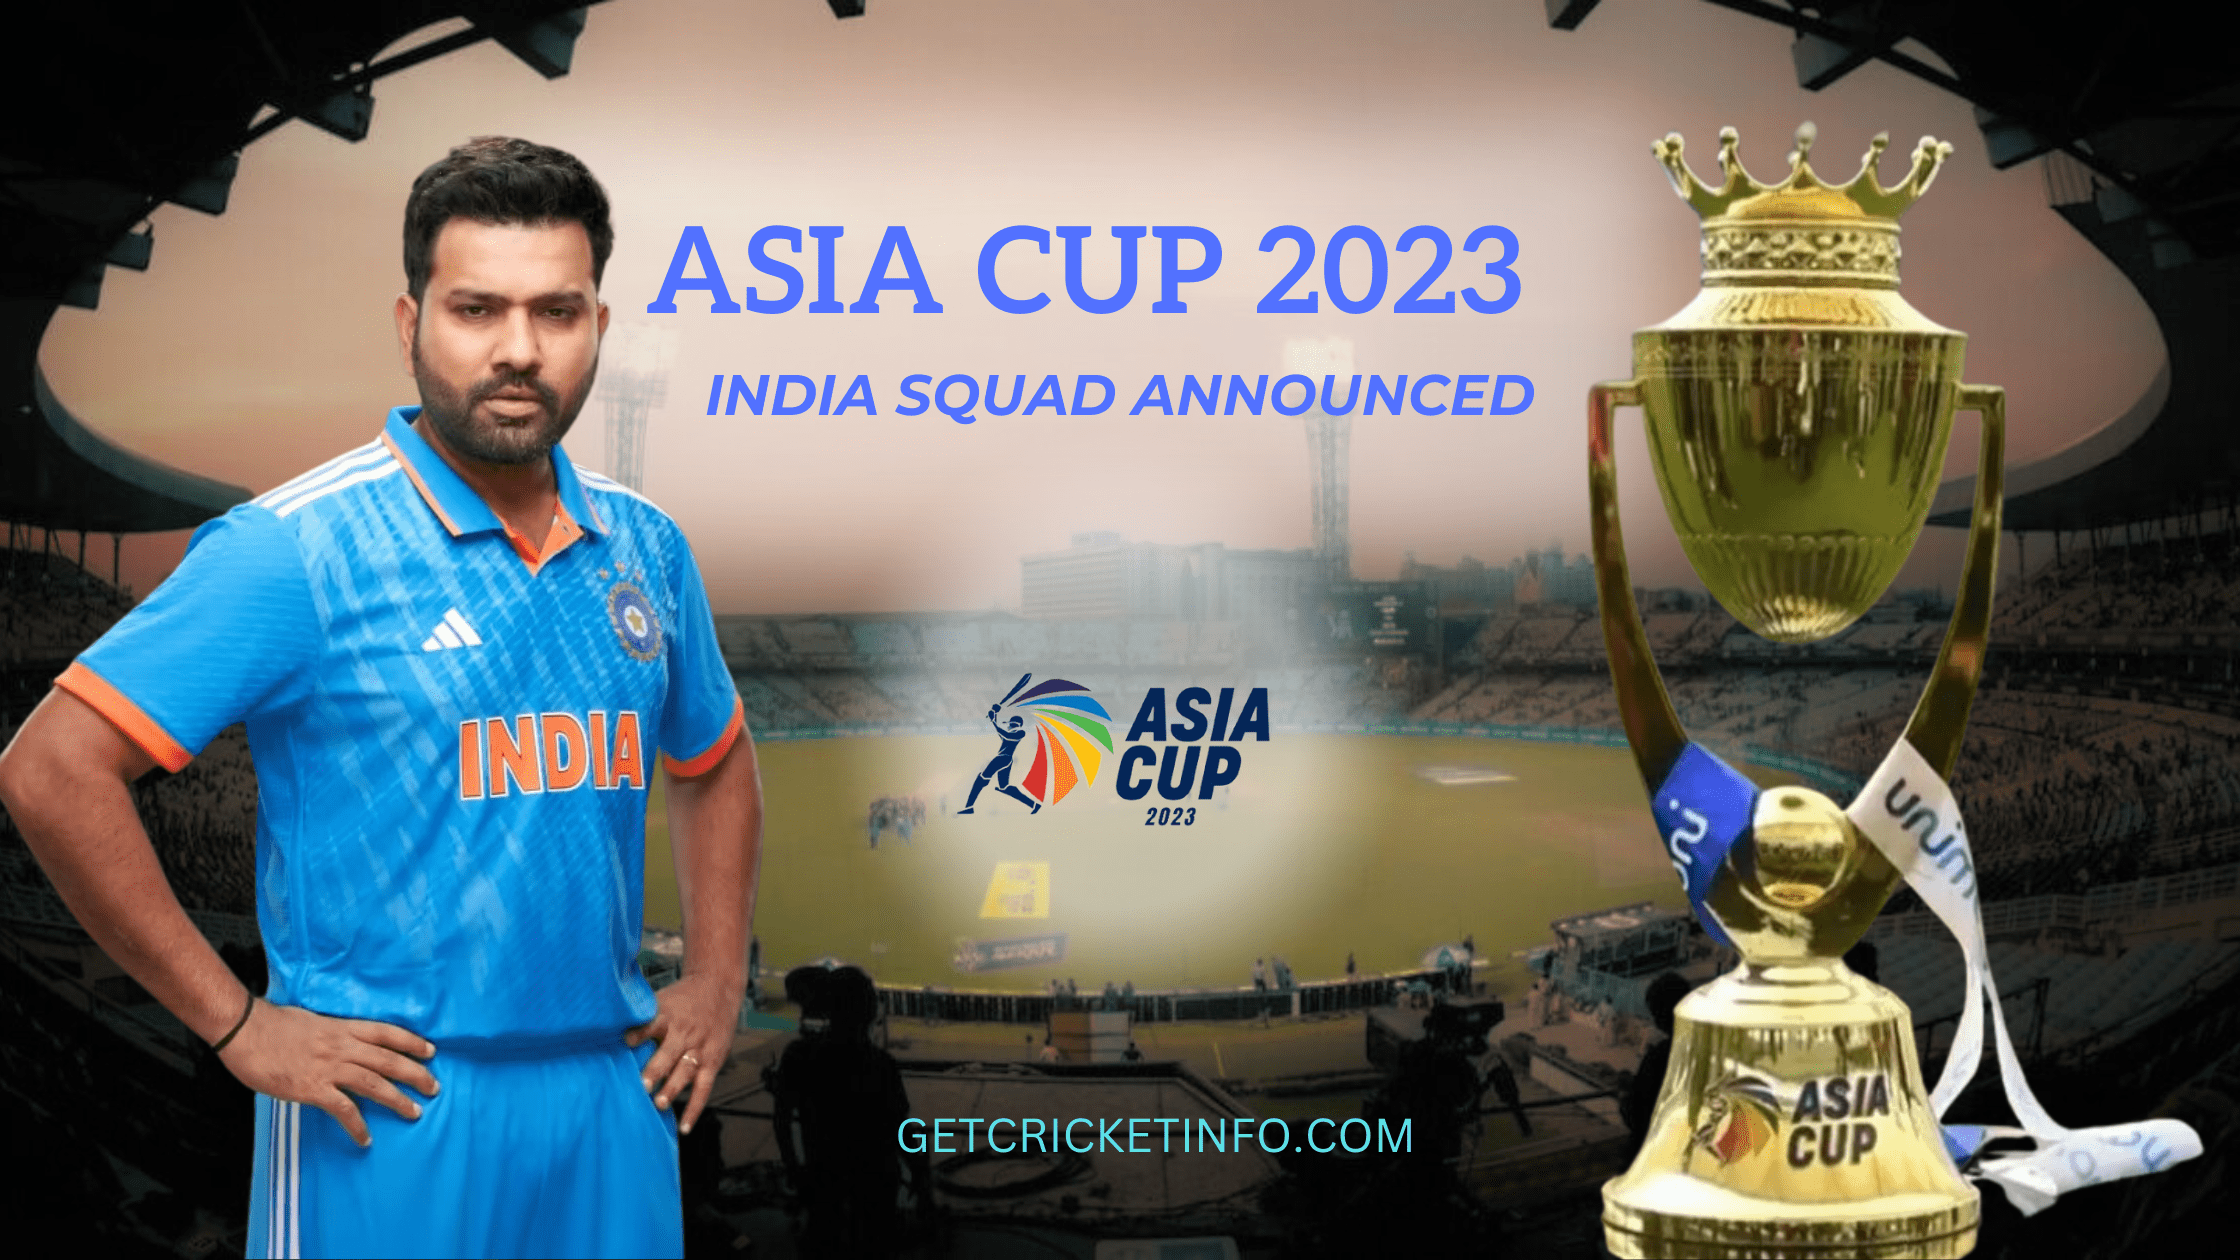 INDIA_ASIA_CUP_SQUAD_2023